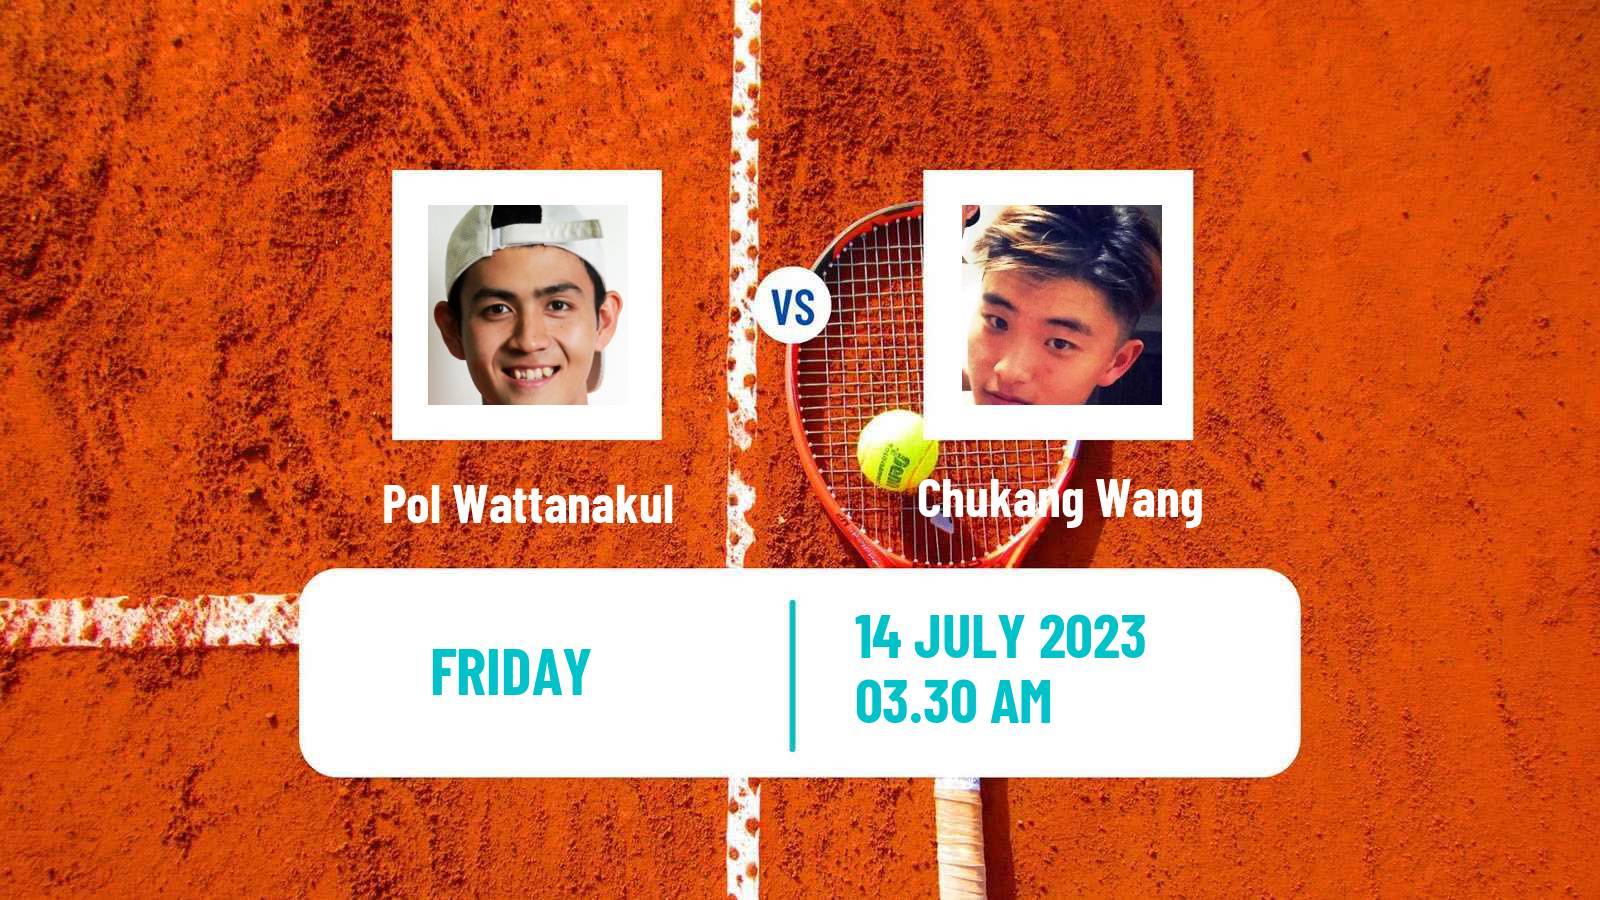 Tennis ITF M15 Shanghai Men Pol Wattanakul - Chukang Wang